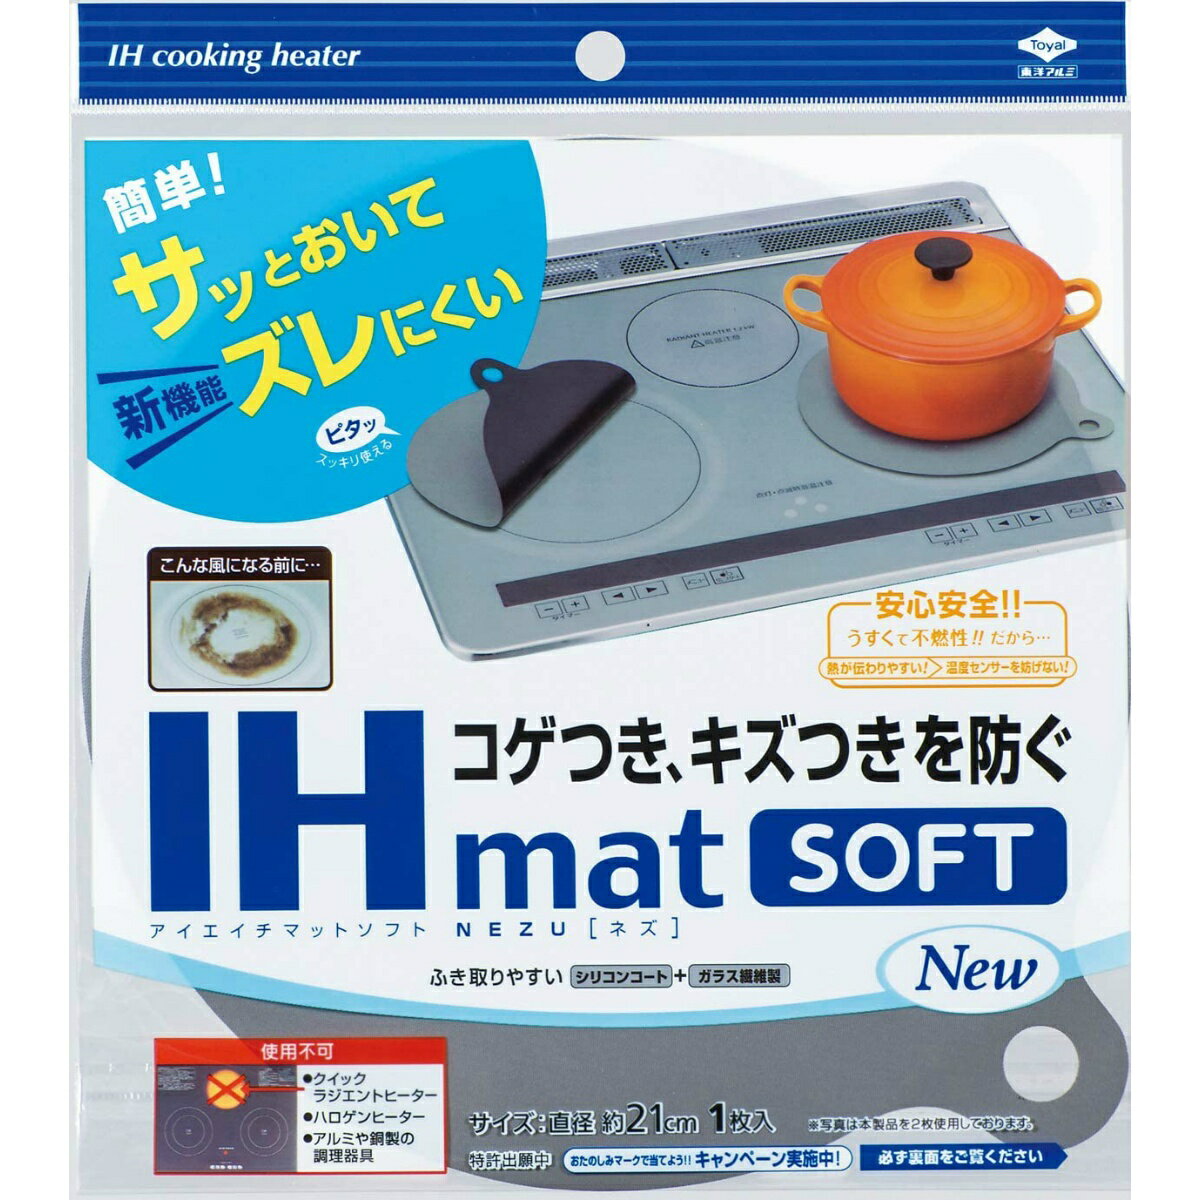 東洋アルミ IHマット ソフト NEZU 1枚入の商品画像